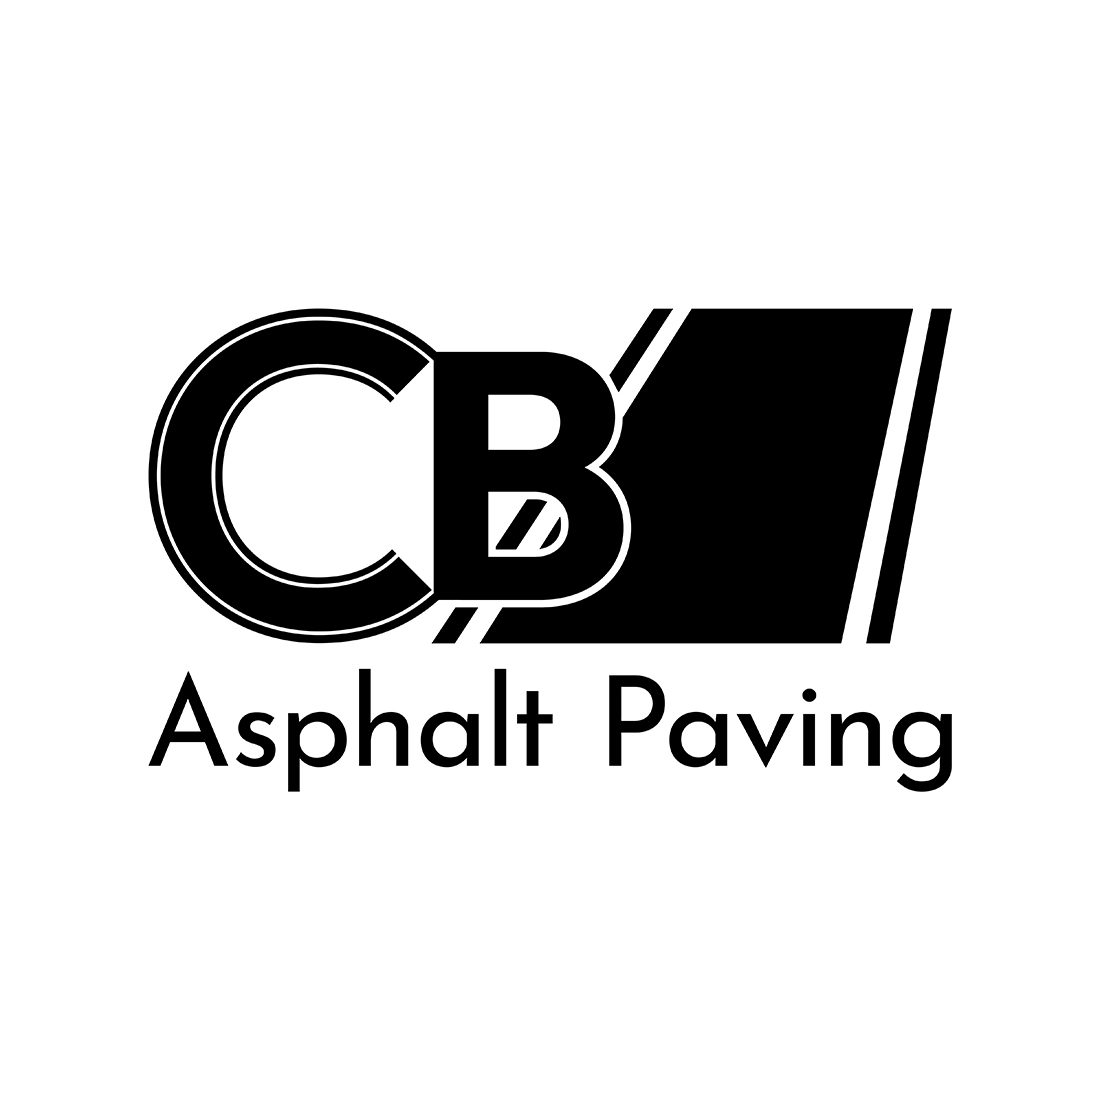 CB letter asphalt paving combination mark logo cover image.